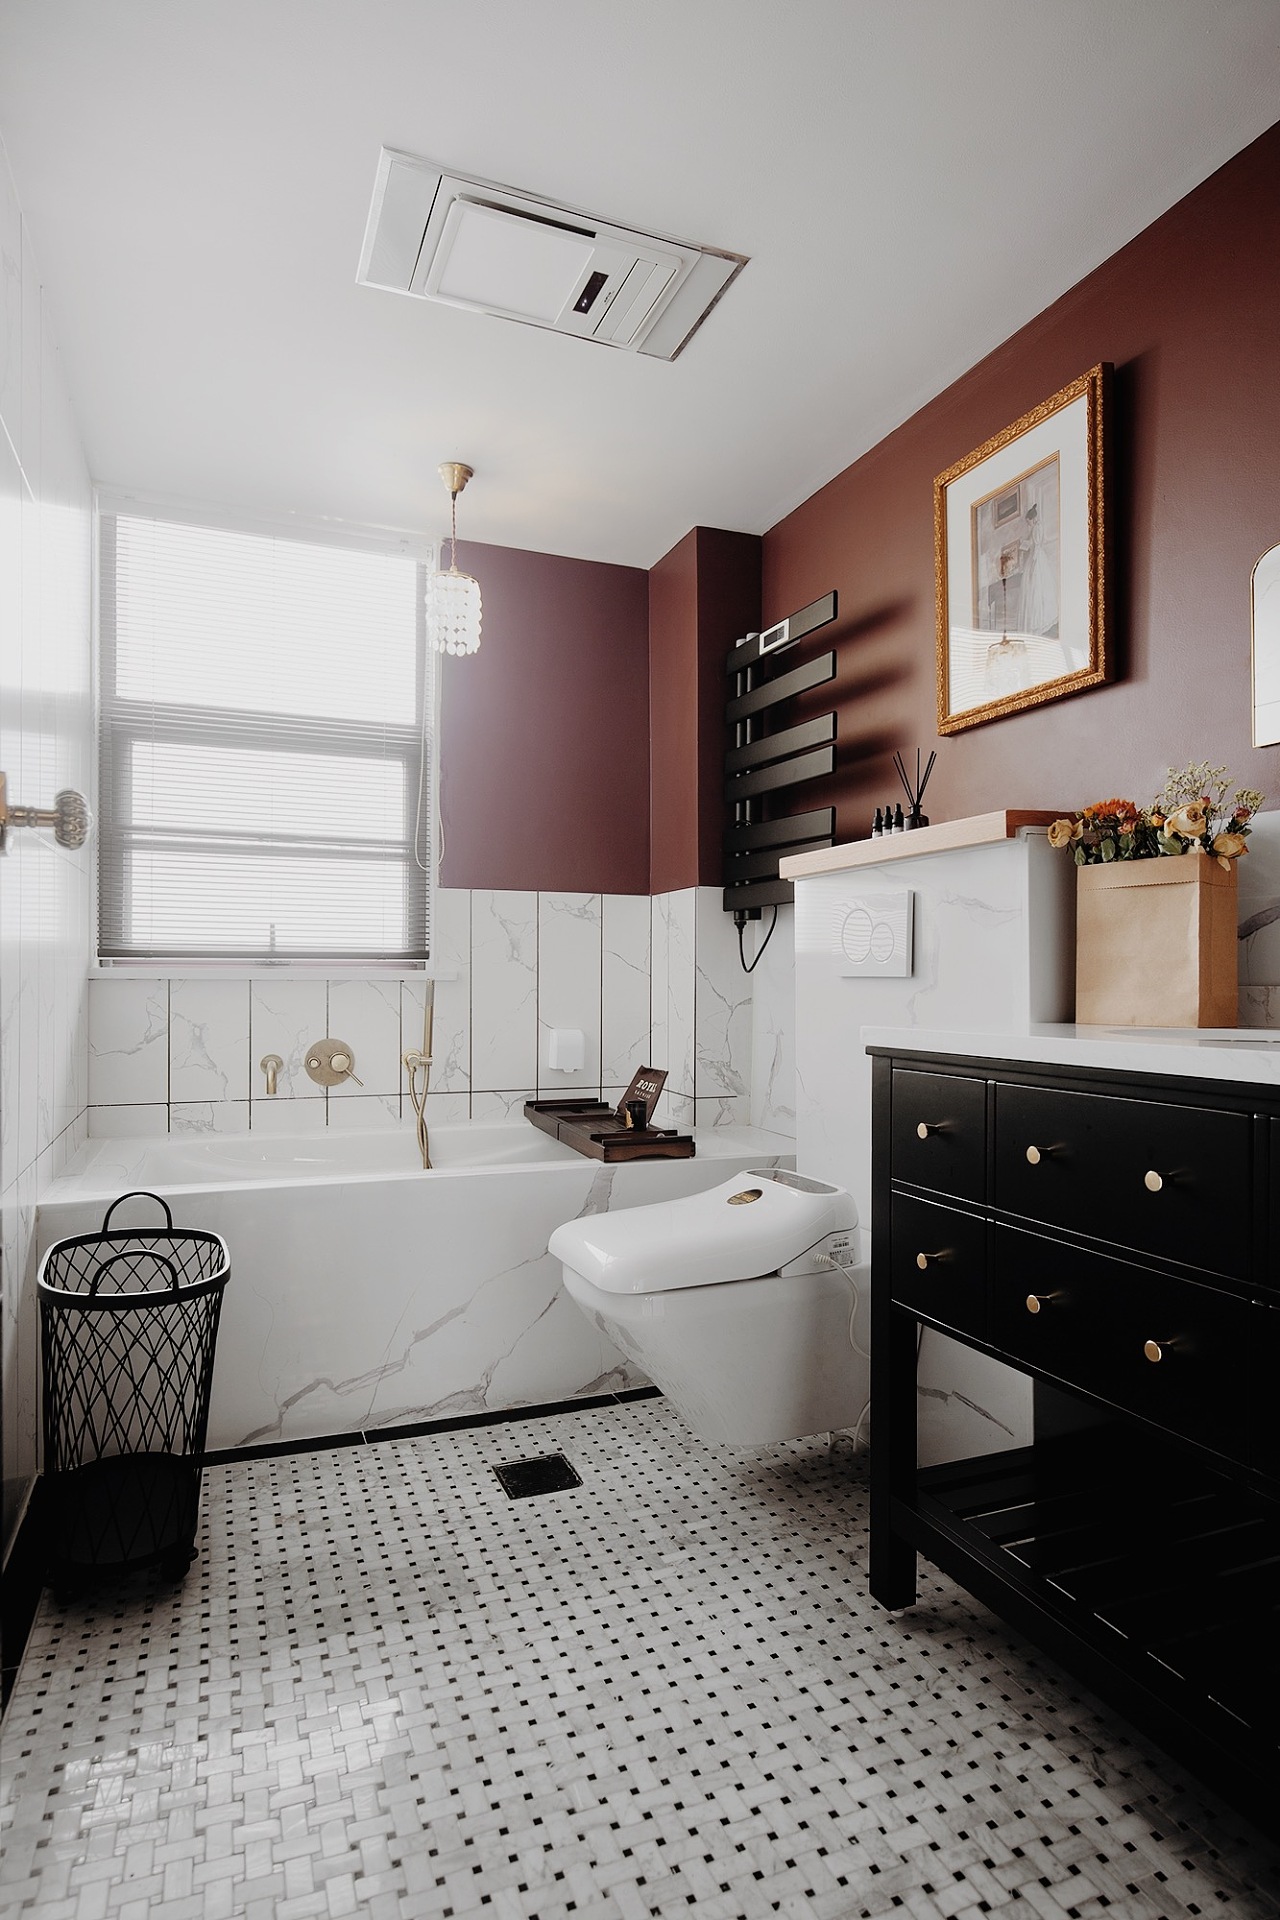 砖红色背景墙与黑色洗手柜凸显复古气息，浴缸营造出舒适的沐浴氛围。